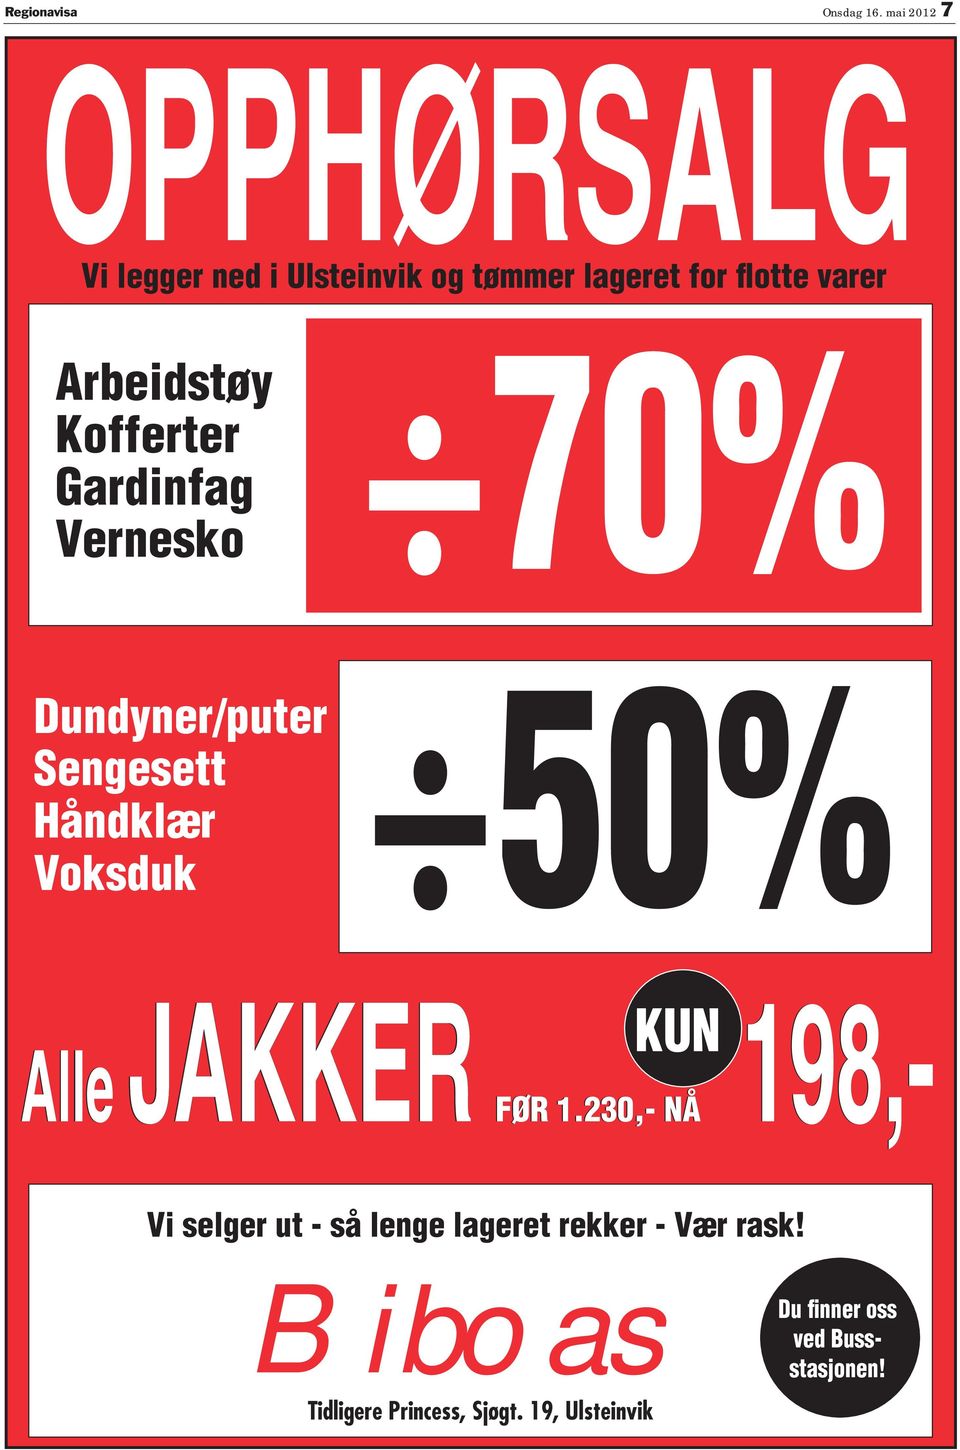 Kofferter Gardinfag Vernesko 70% Dundyner/puter 50% engesett Håndklær Voksduk JKK lle FØ KU